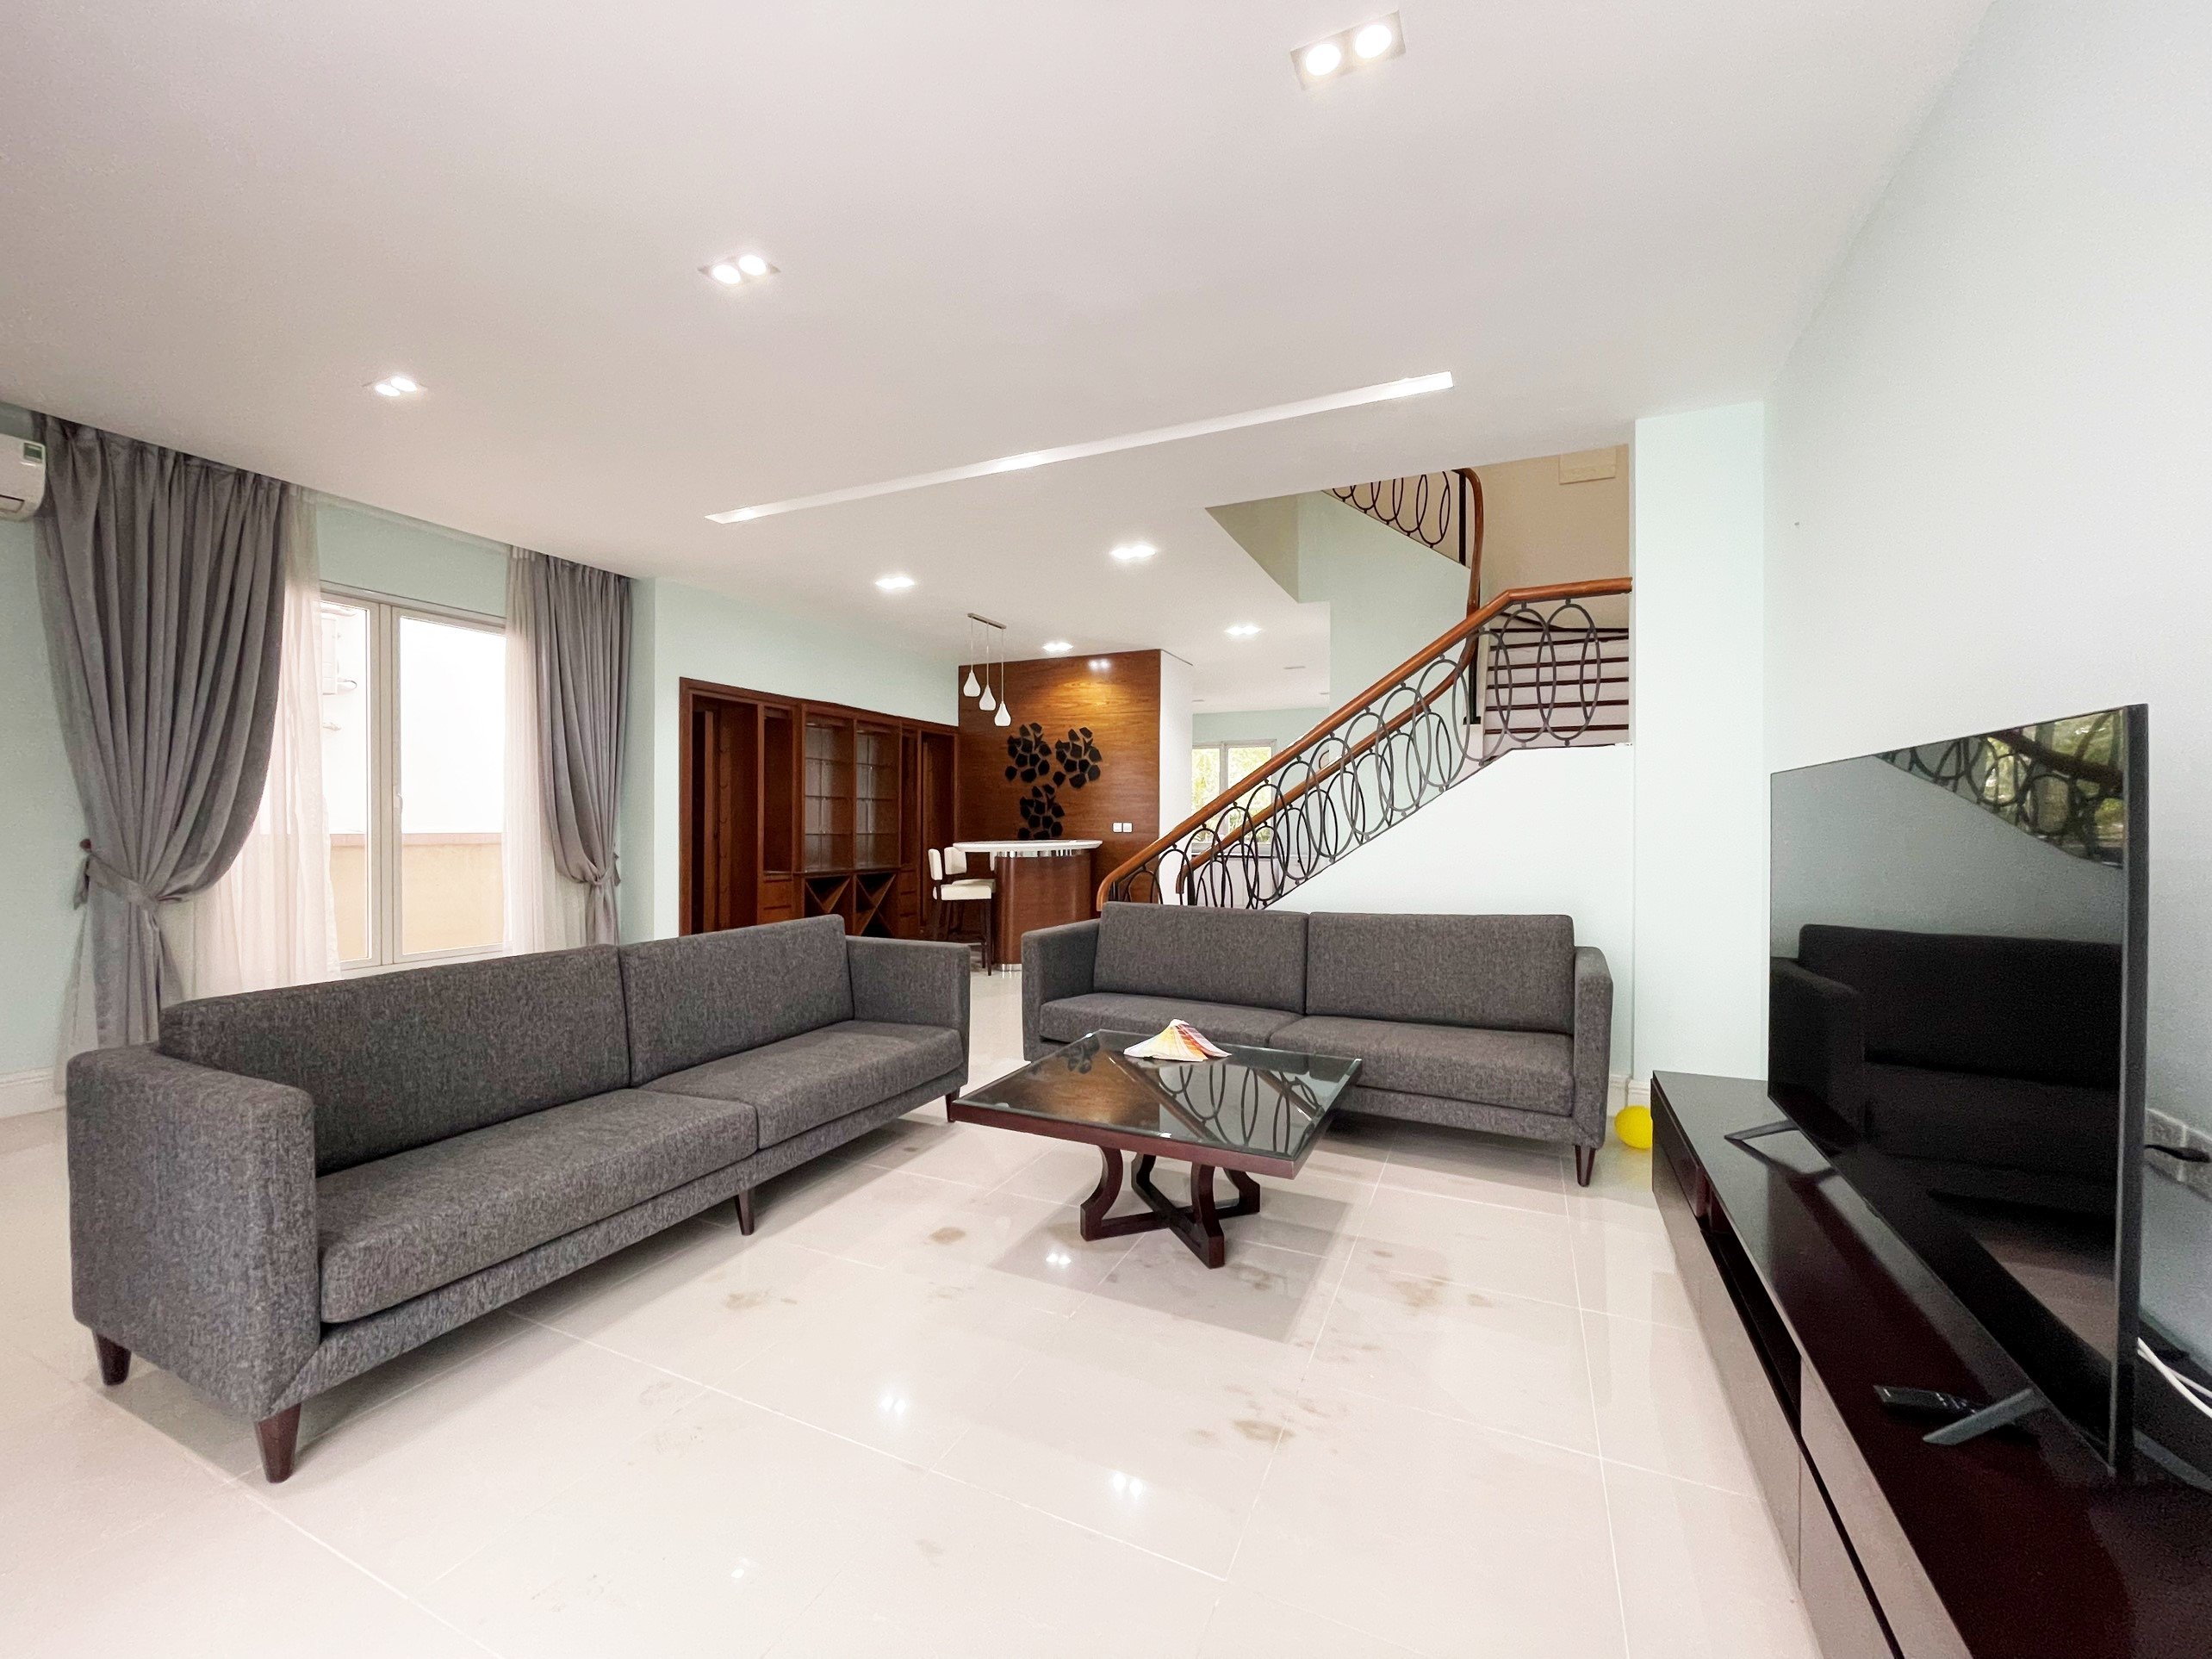 4 bedroom villa for rent in Hoa Sua block, Vinhomes Riverside, Long Bien district 4